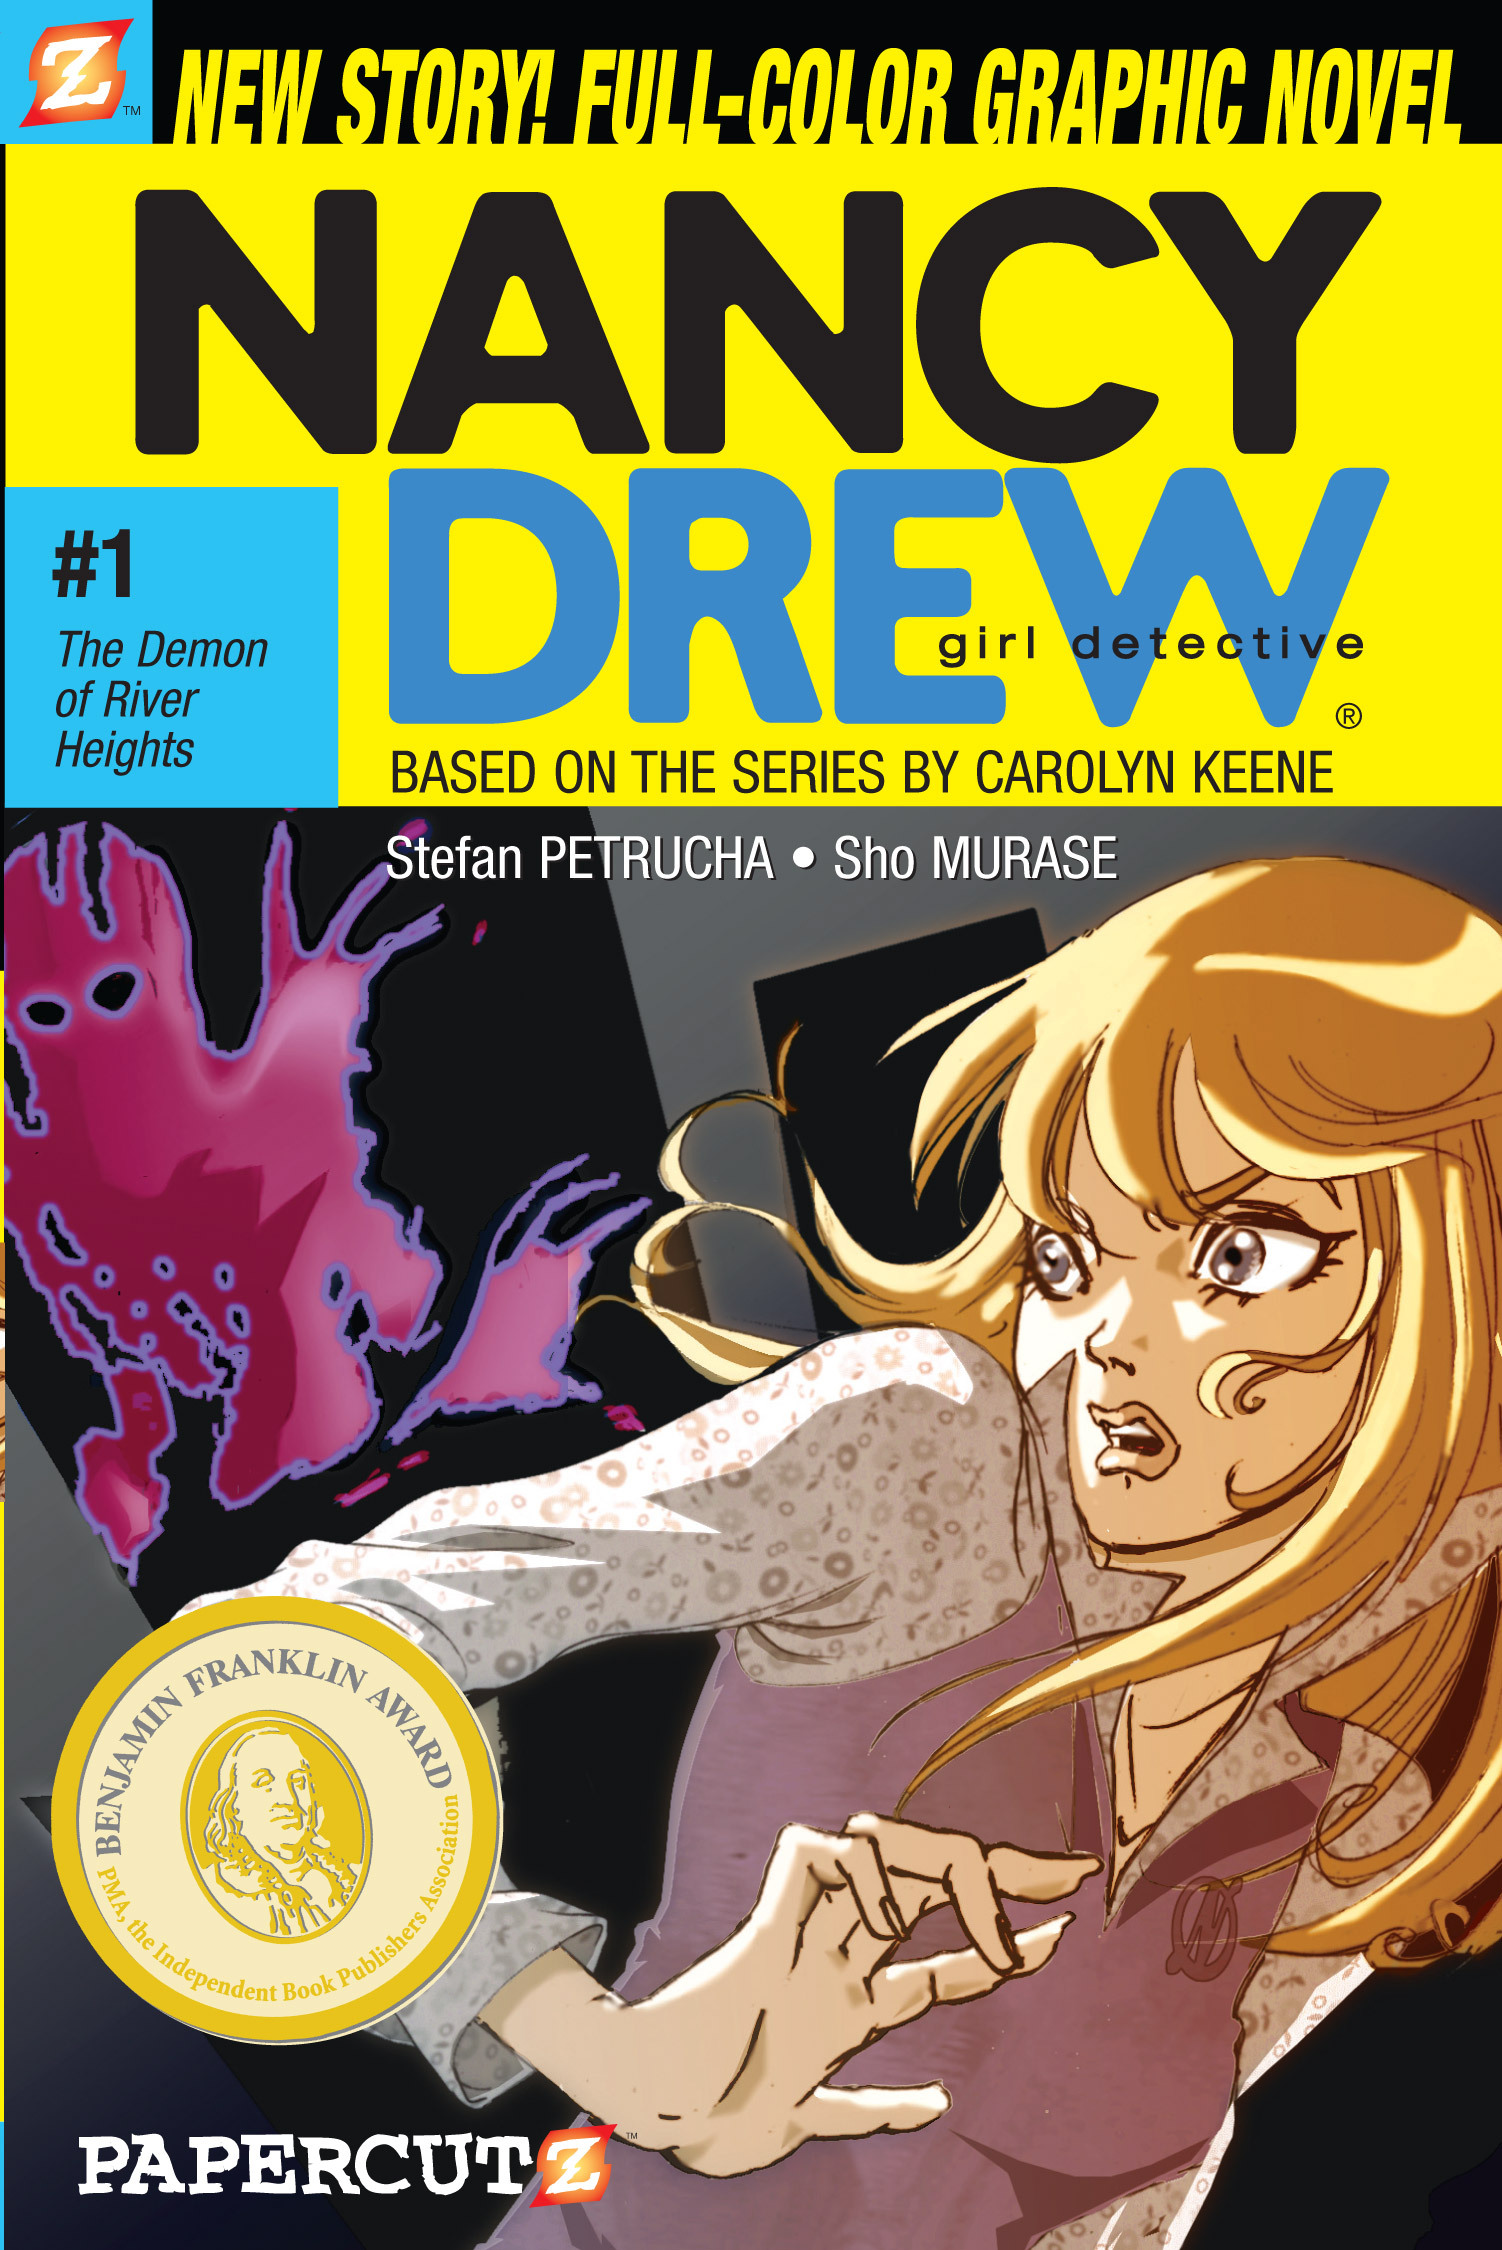 Read online Nancy Drew comic -  Issue #1 - 1